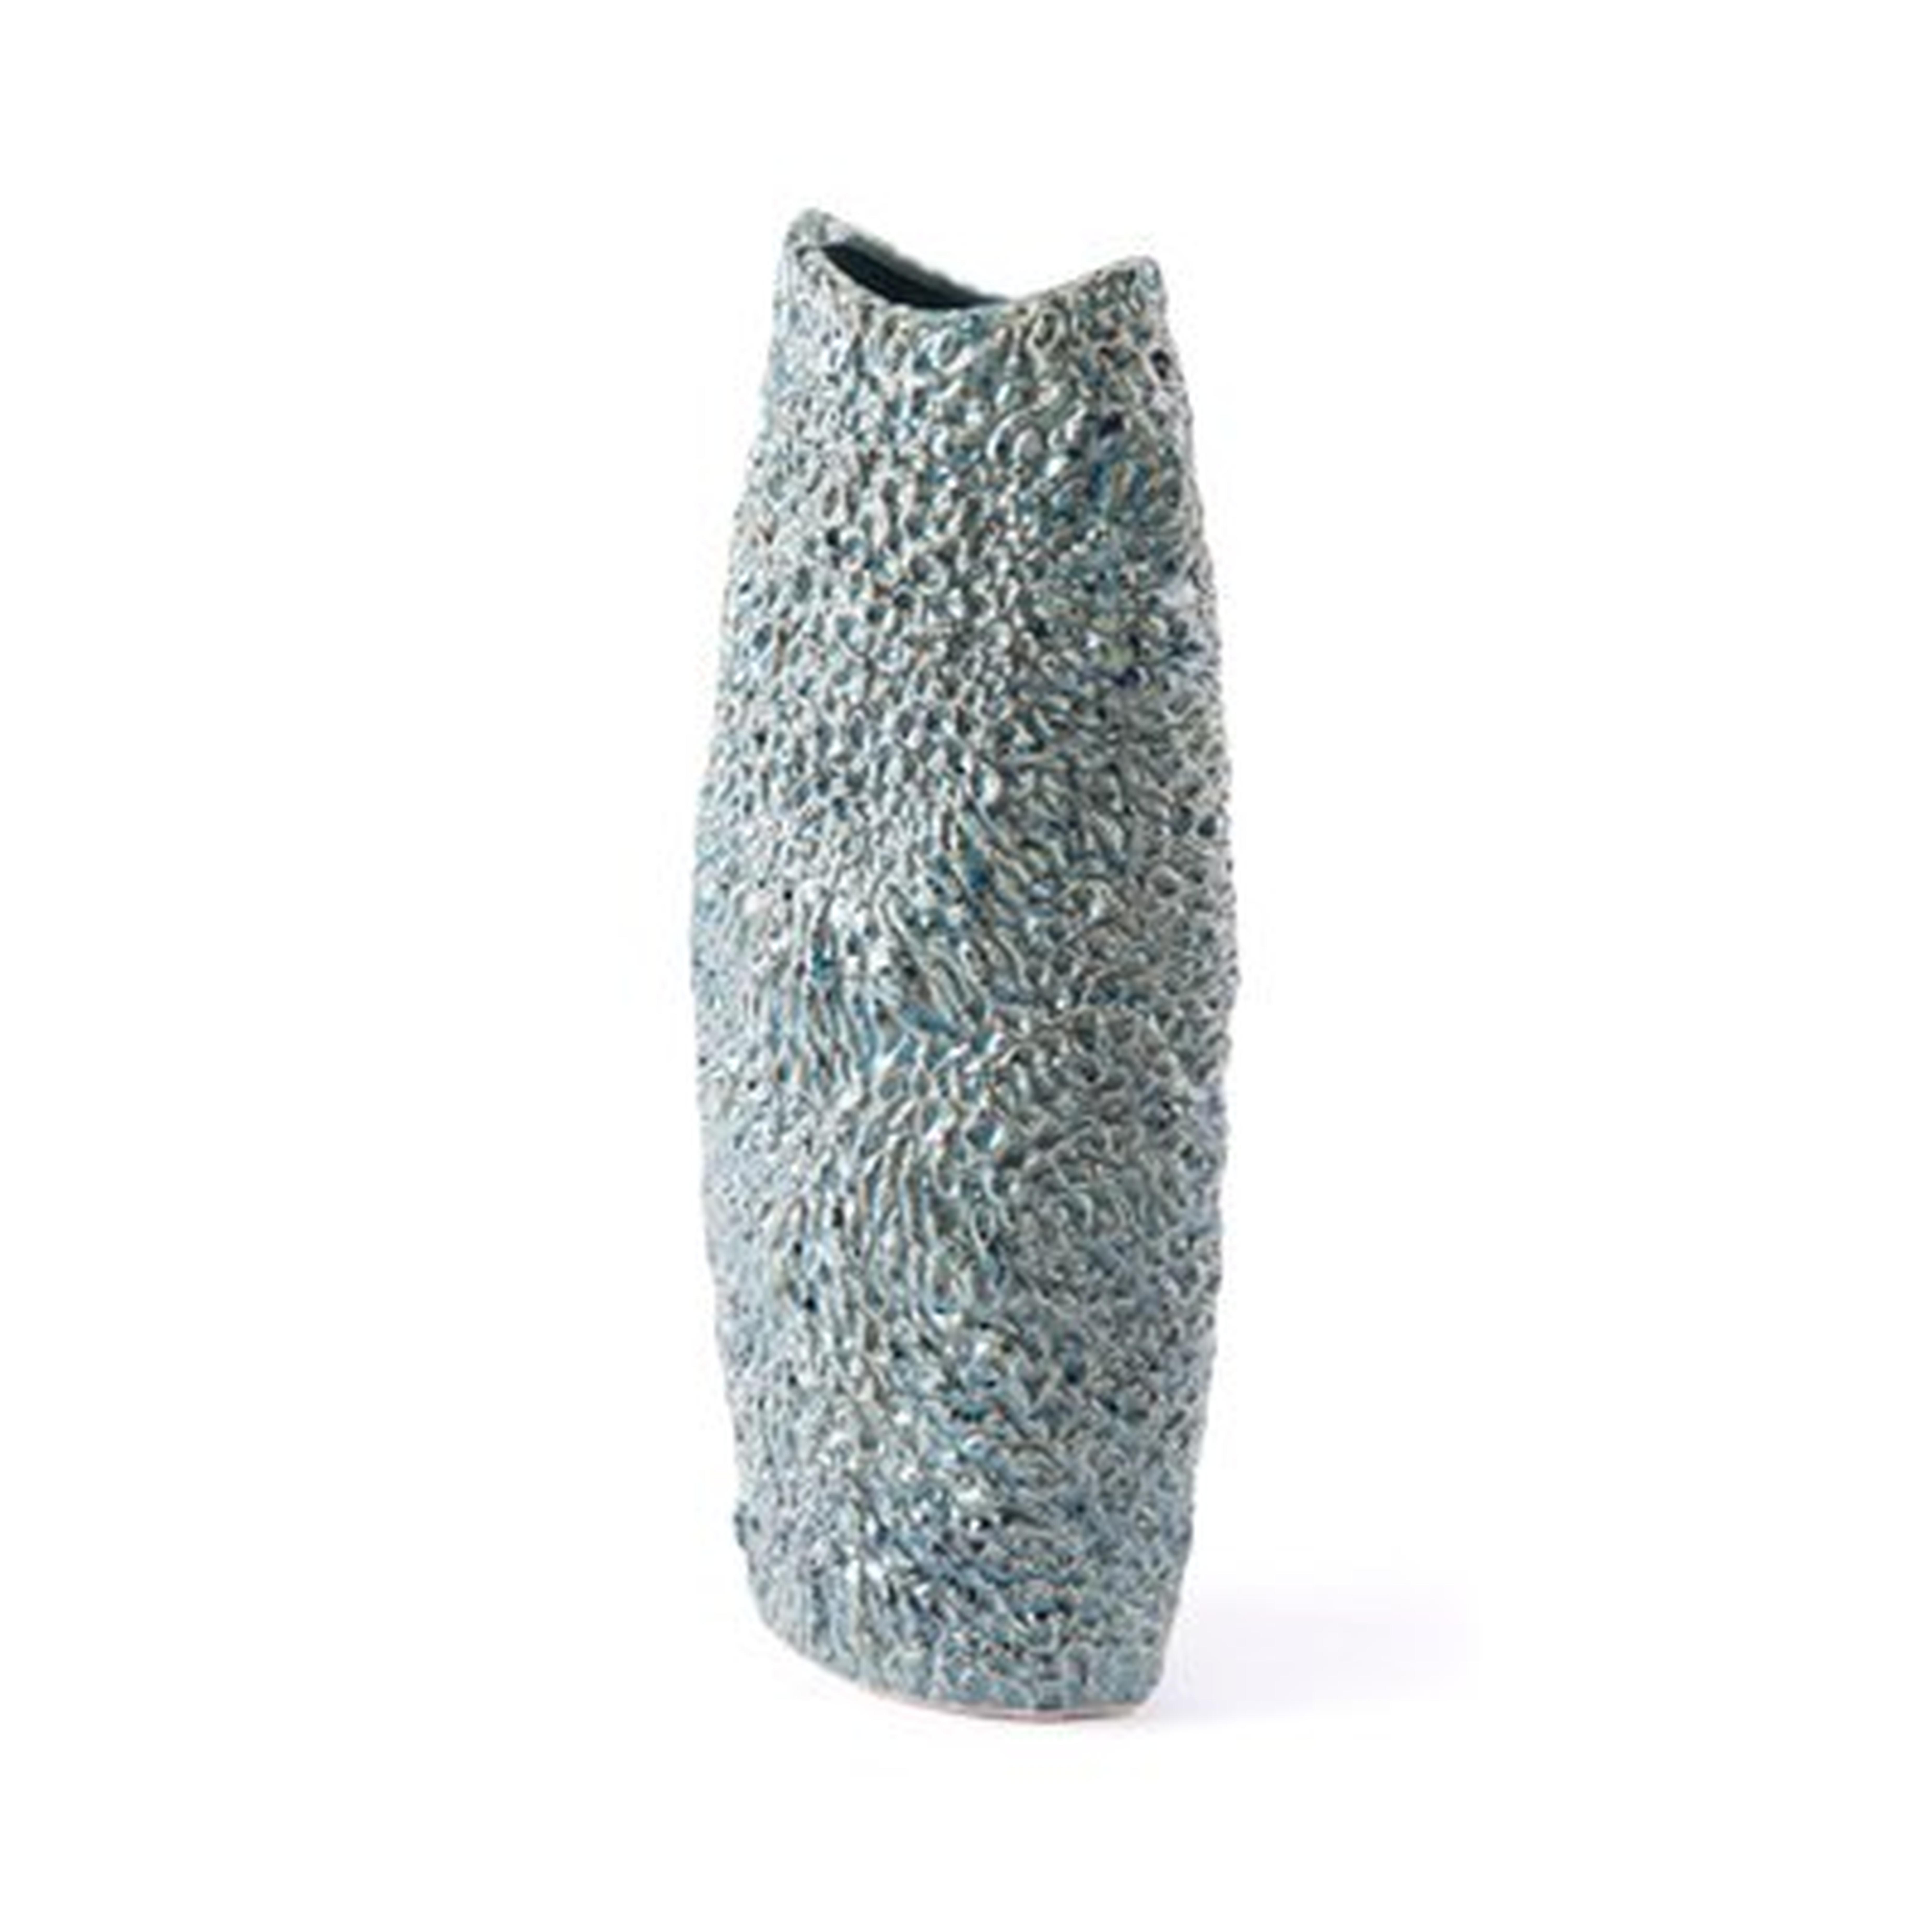 Adams Crisp Table Vase - Wayfair